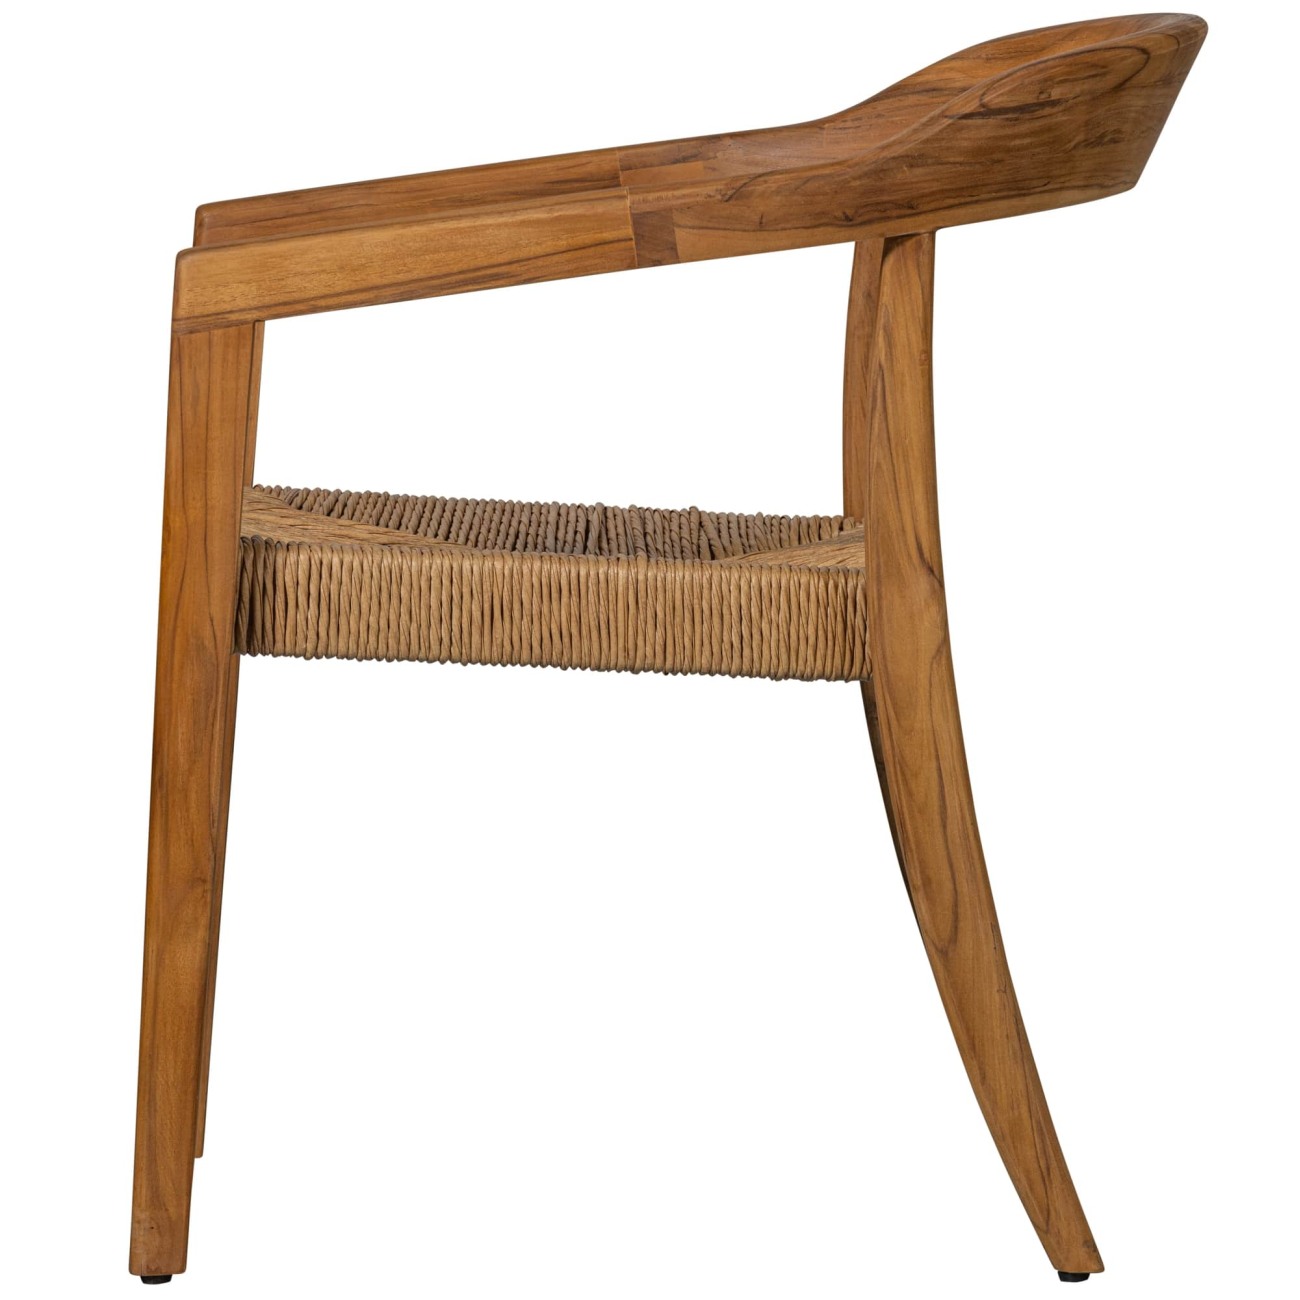 Der Gartenstuhl Chena überzeugt mit seinem modernen Design. Gefertigt wurde er aus Geflecht, welches einen natürlichen Farbton besitzt. Das Gestell ist aus Teakholz und hat eine natürliche Farbe. Der Stuhl besitzt eine Sitzhöhe von 46 cm.